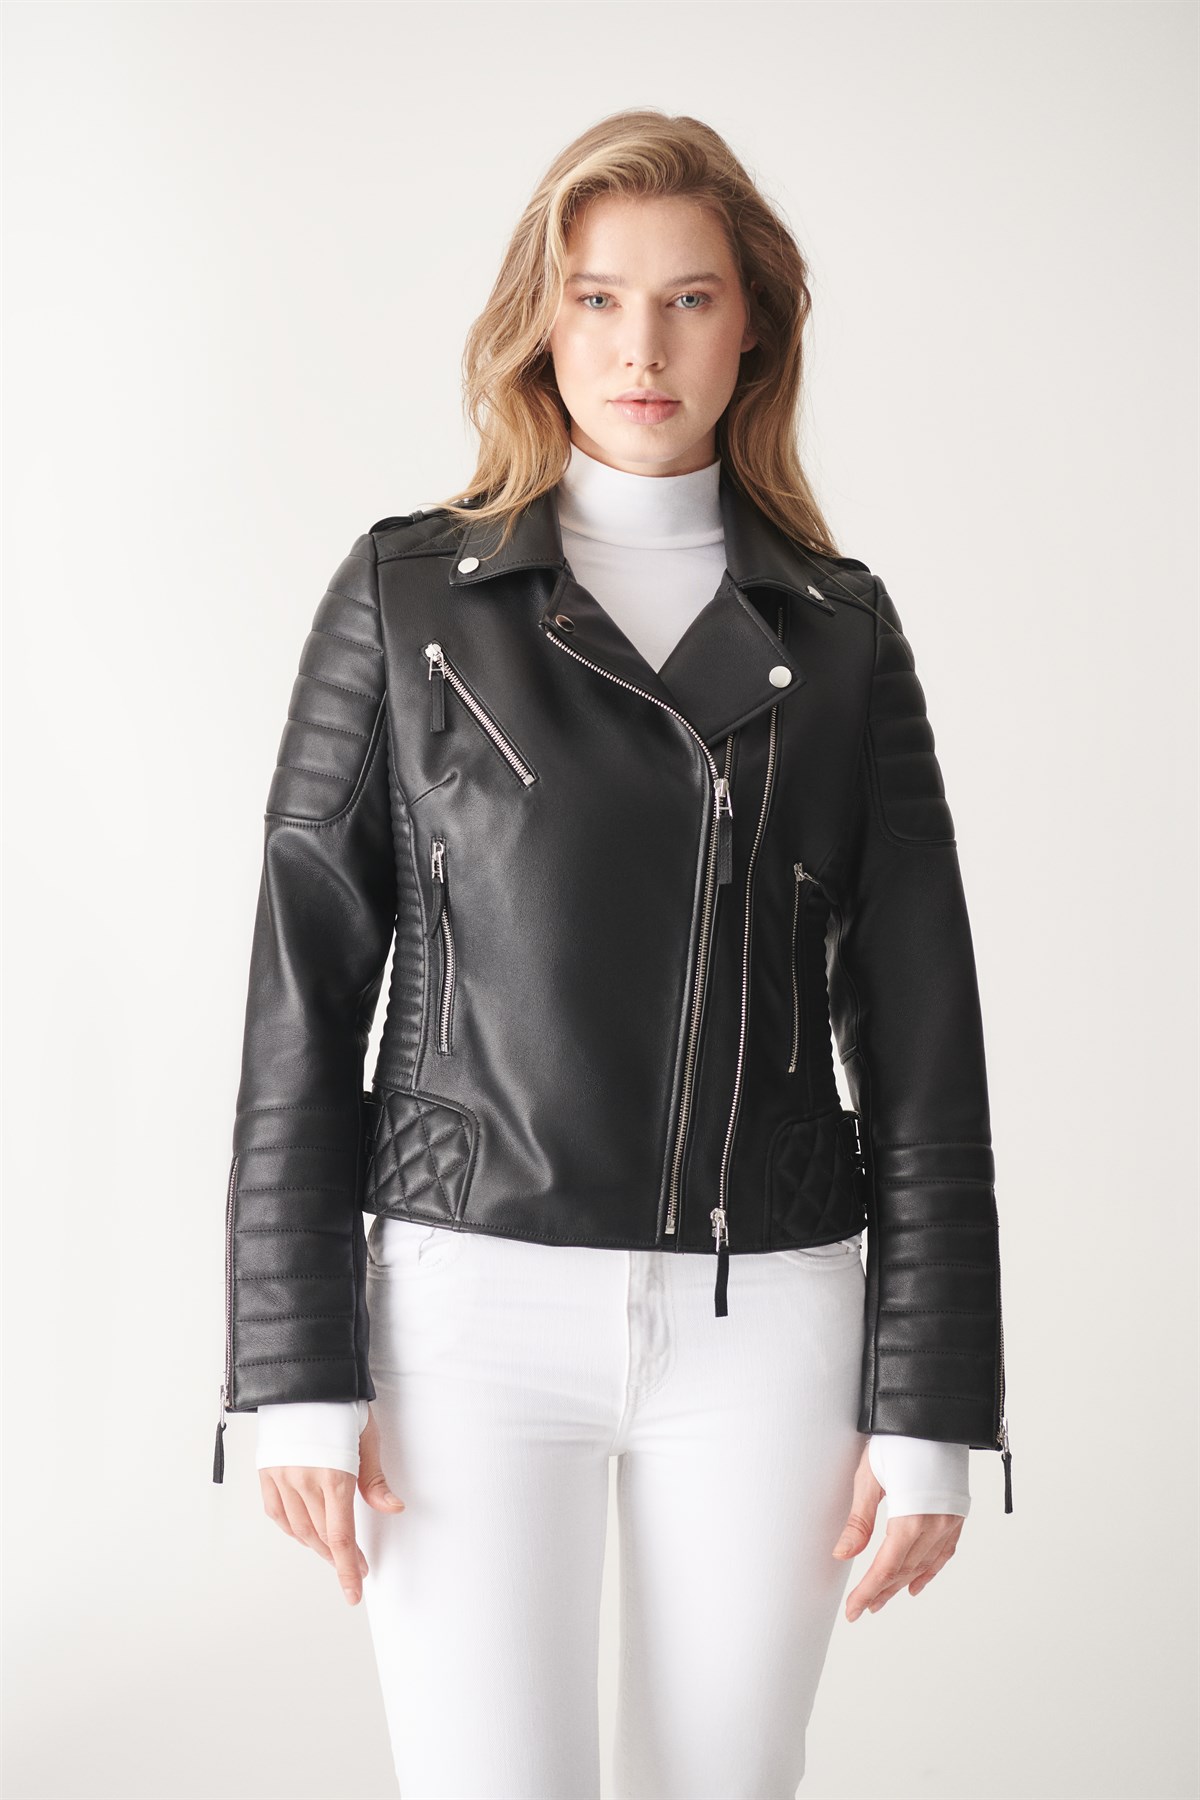 ADA Black Biker Leather Jacket | Women's Leather Jacket Models